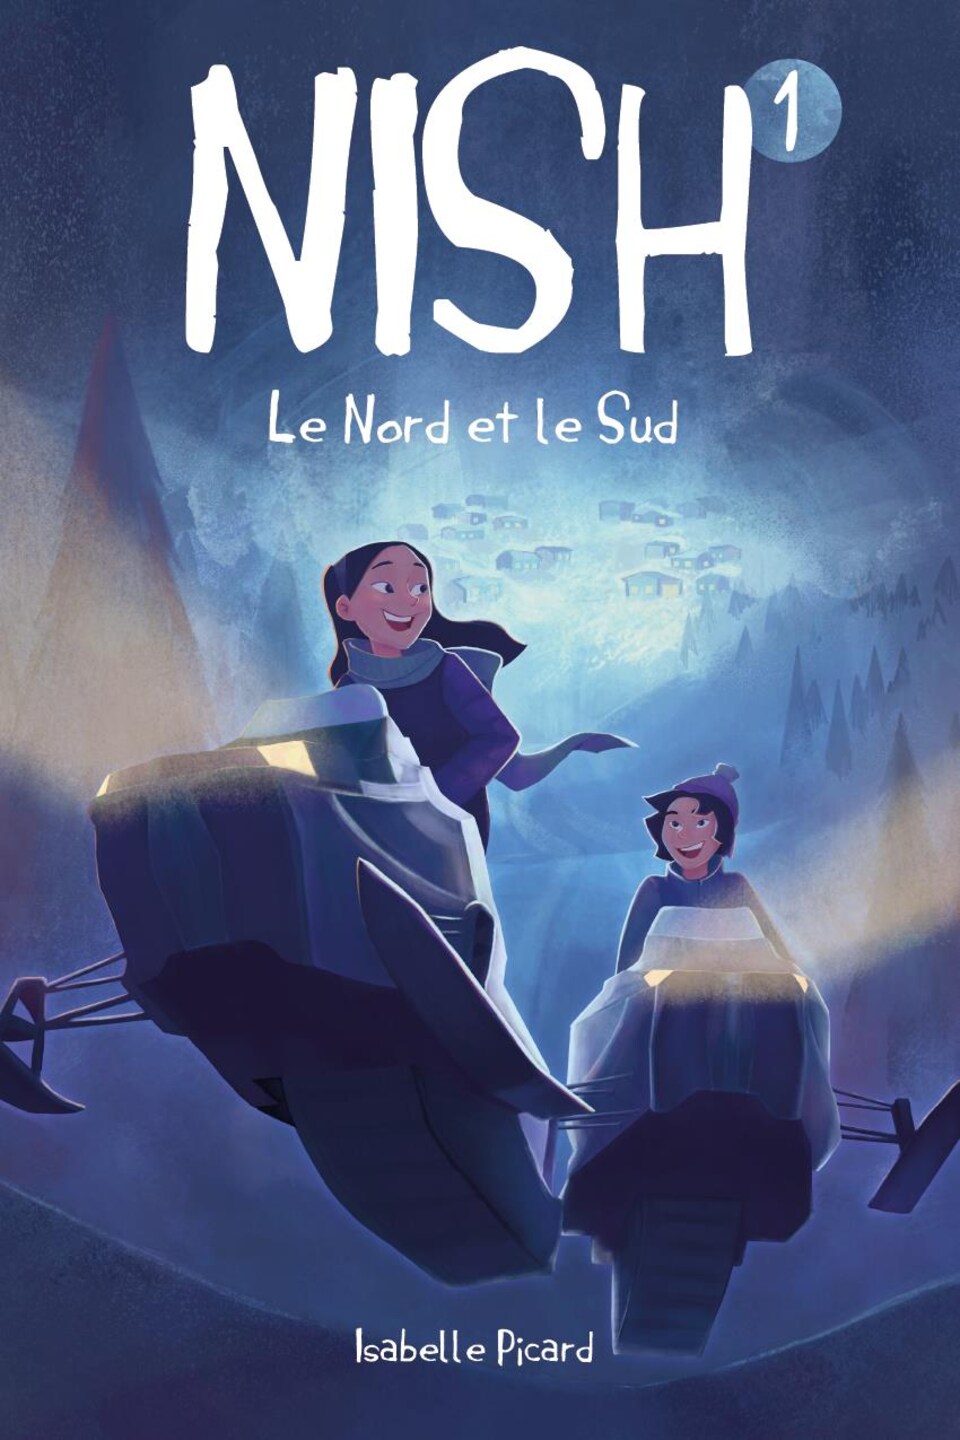 Couverture du livre Nish. Illustration de deux jeunes en motoneige.